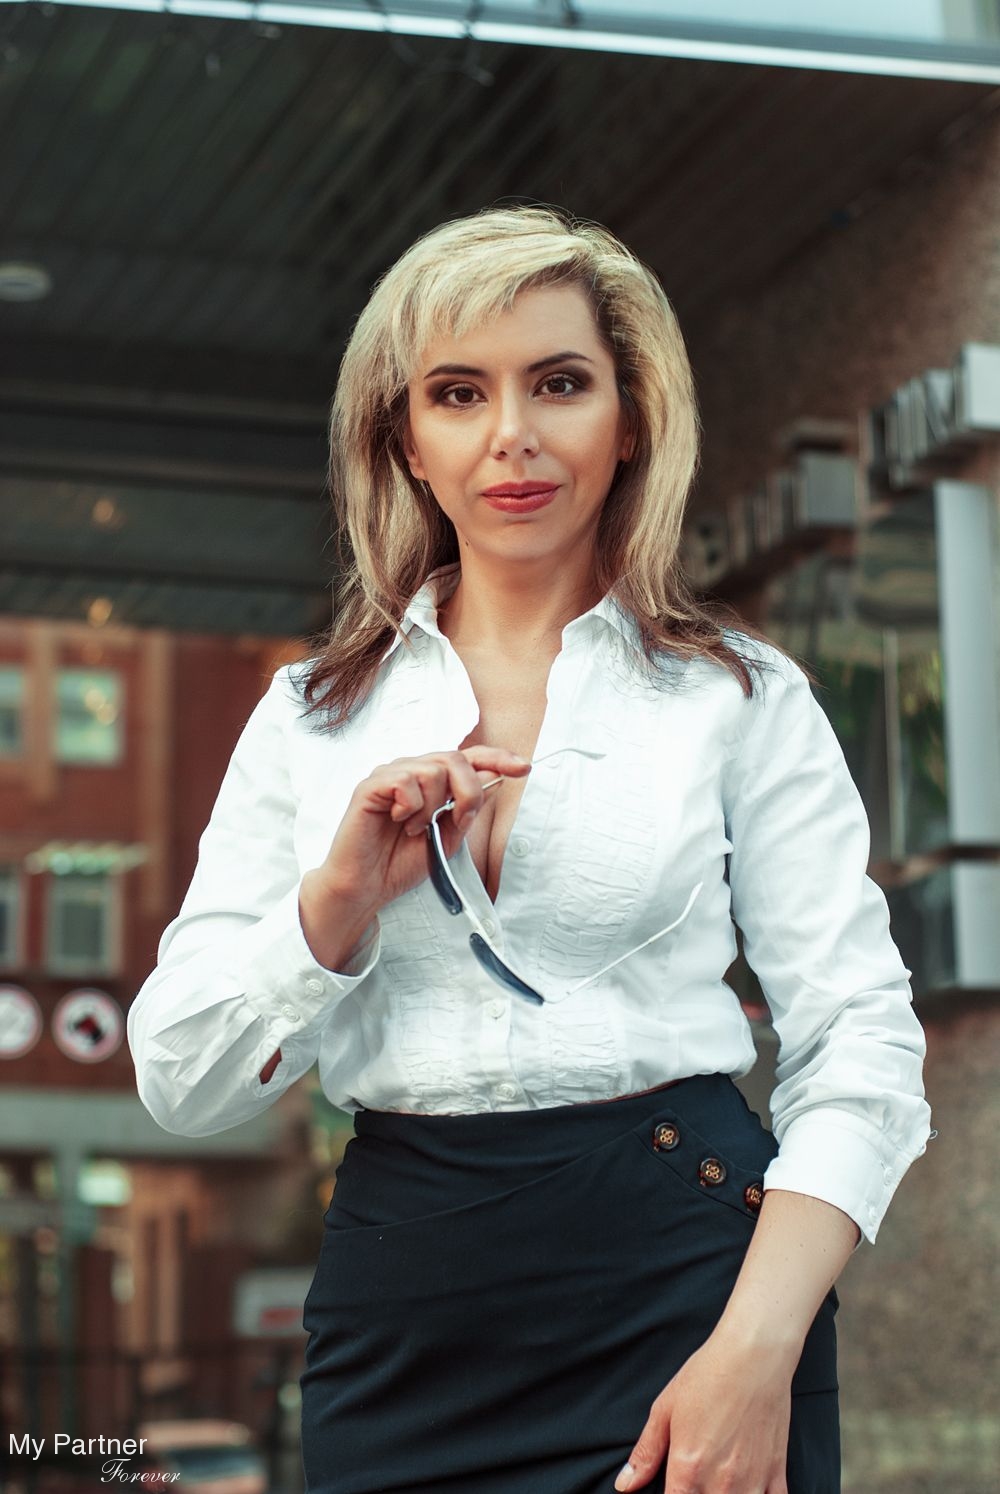 Dating Service to Meet Single Ukrainian Woman Raisa from Poltava, Ukraine